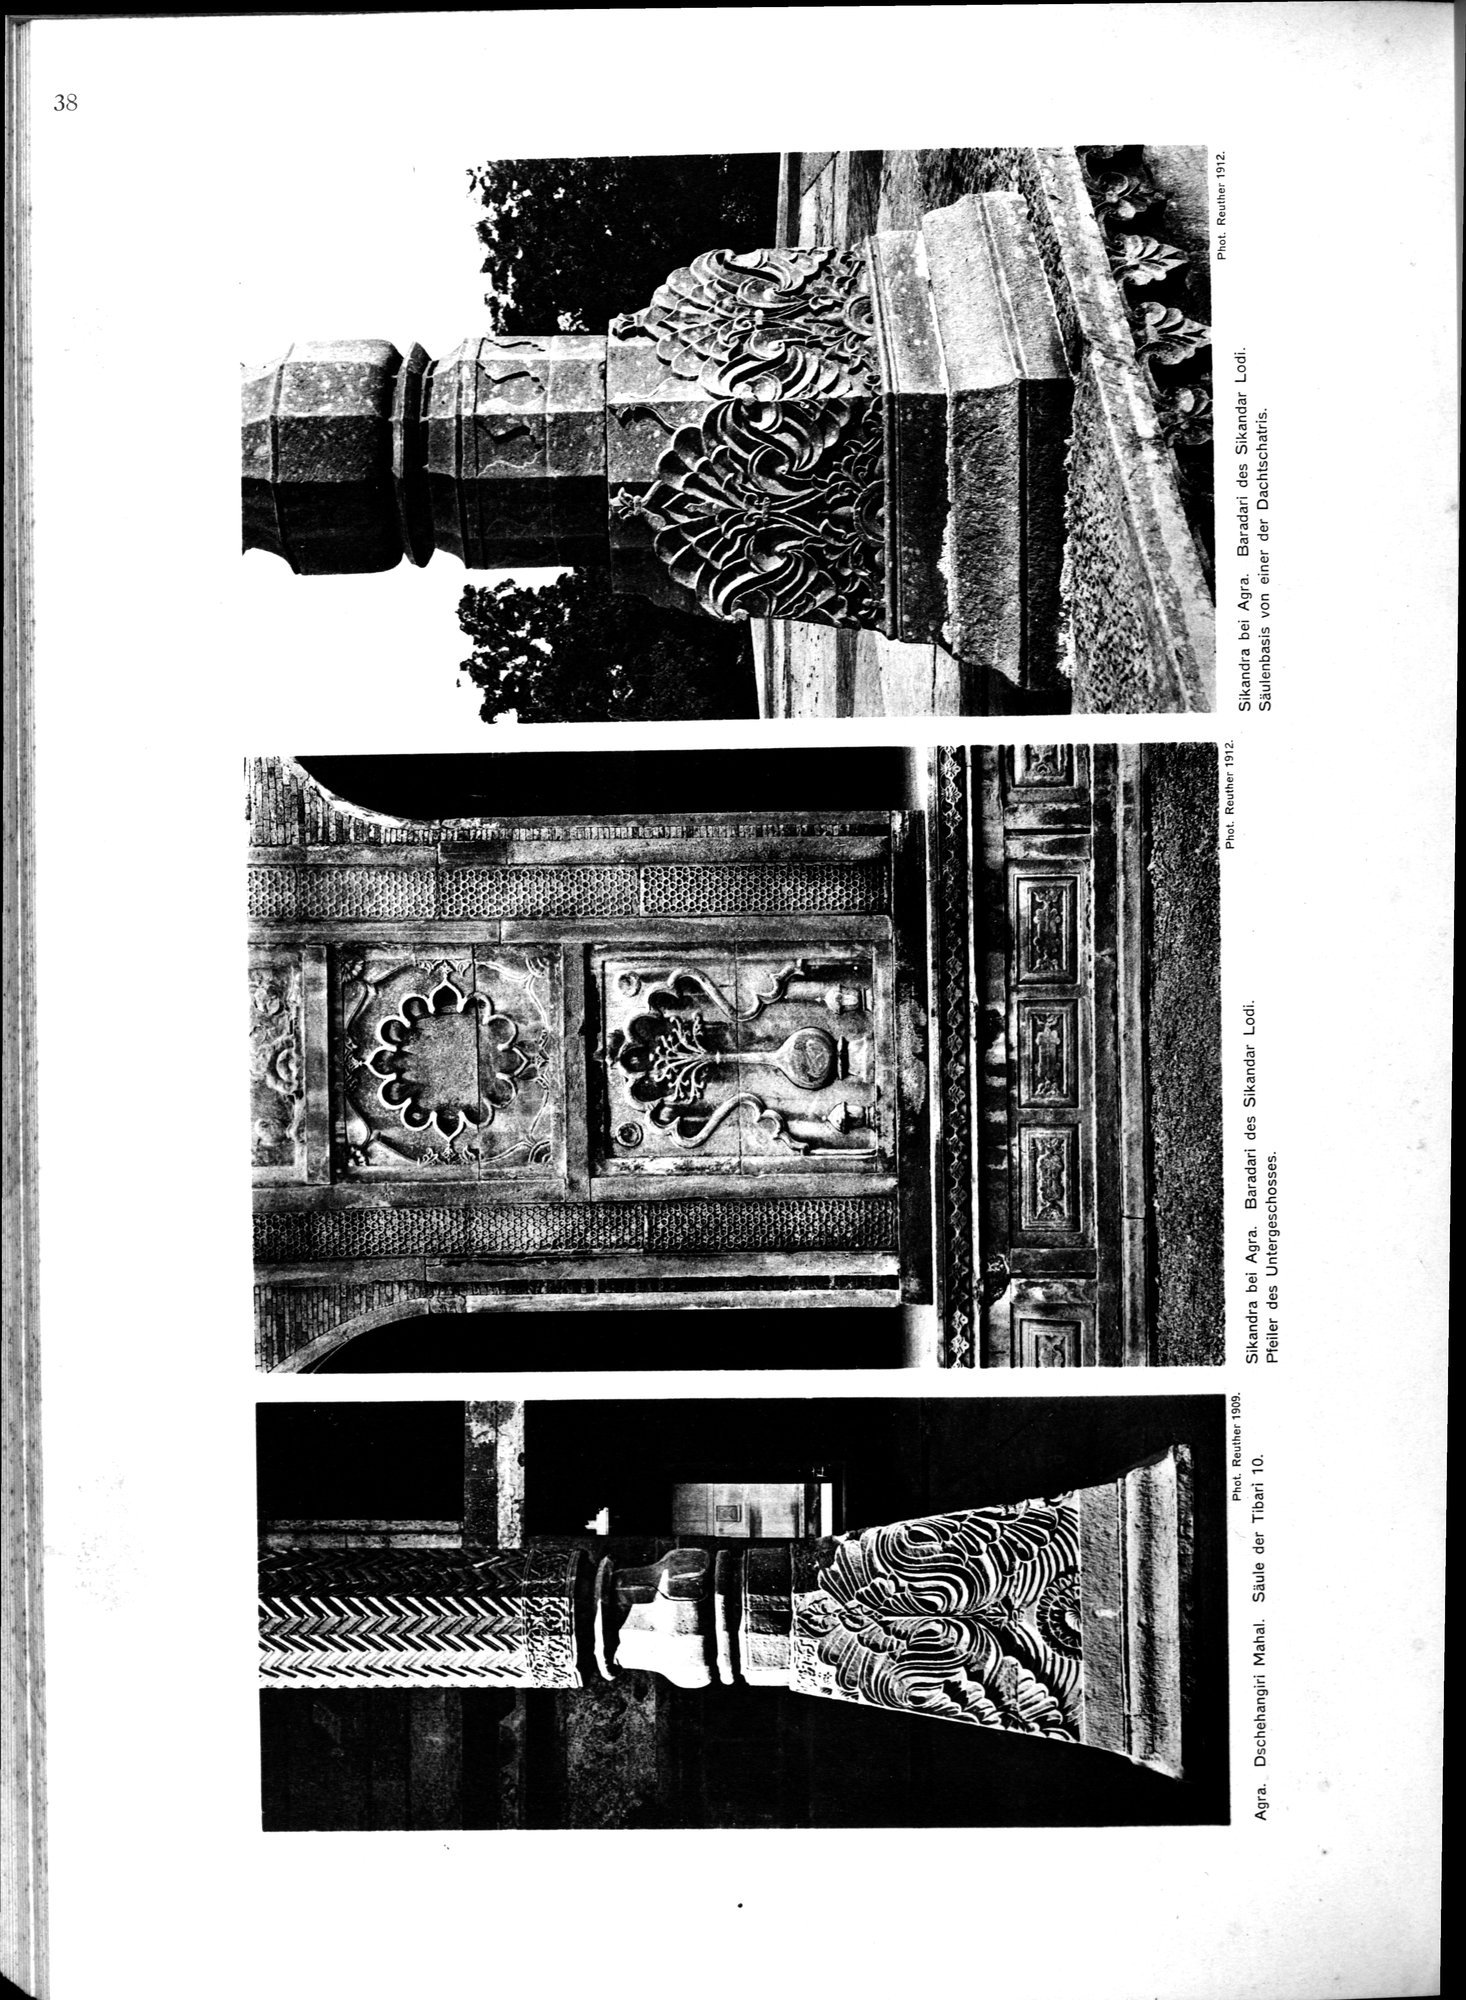 Indische Palaste und Wohnhauser : vol.1 / Page 154 (Grayscale High Resolution Image)